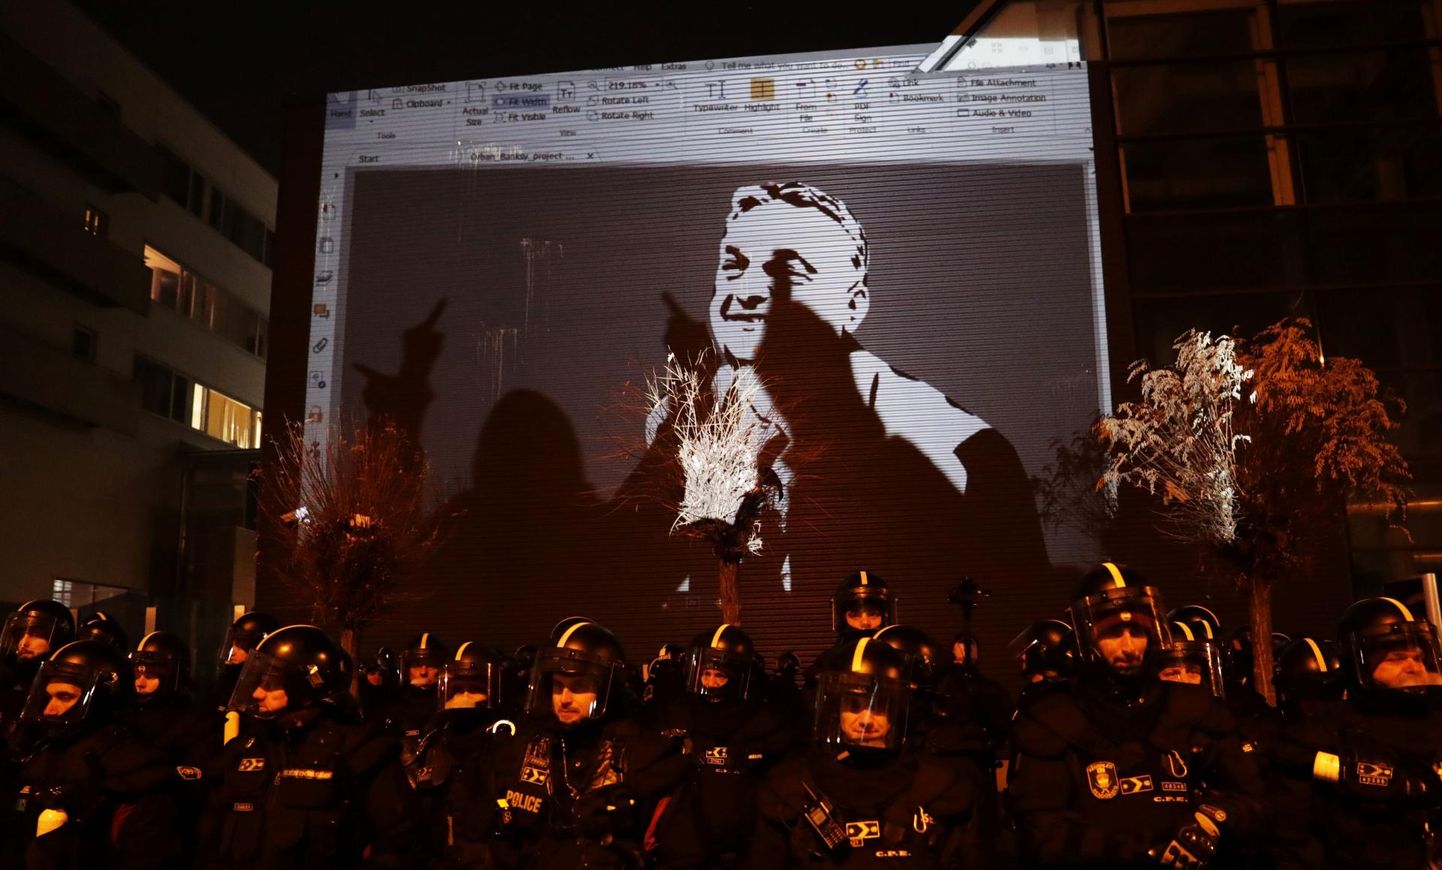 Esmaspäeva õhtul näitasid meeleavaldajad projektoriga Budapesti äärelinnas asuva Ungari avalik-õigusliku telekanali hoone seinale joonistust peaminister Viktor Orbánist. Esialgu pole protestid olnud nii suured, et valitsus peaks üleliia muretsema, kuid opositsiooni üksmeel ja protestijate raev on varasemast suuremad.